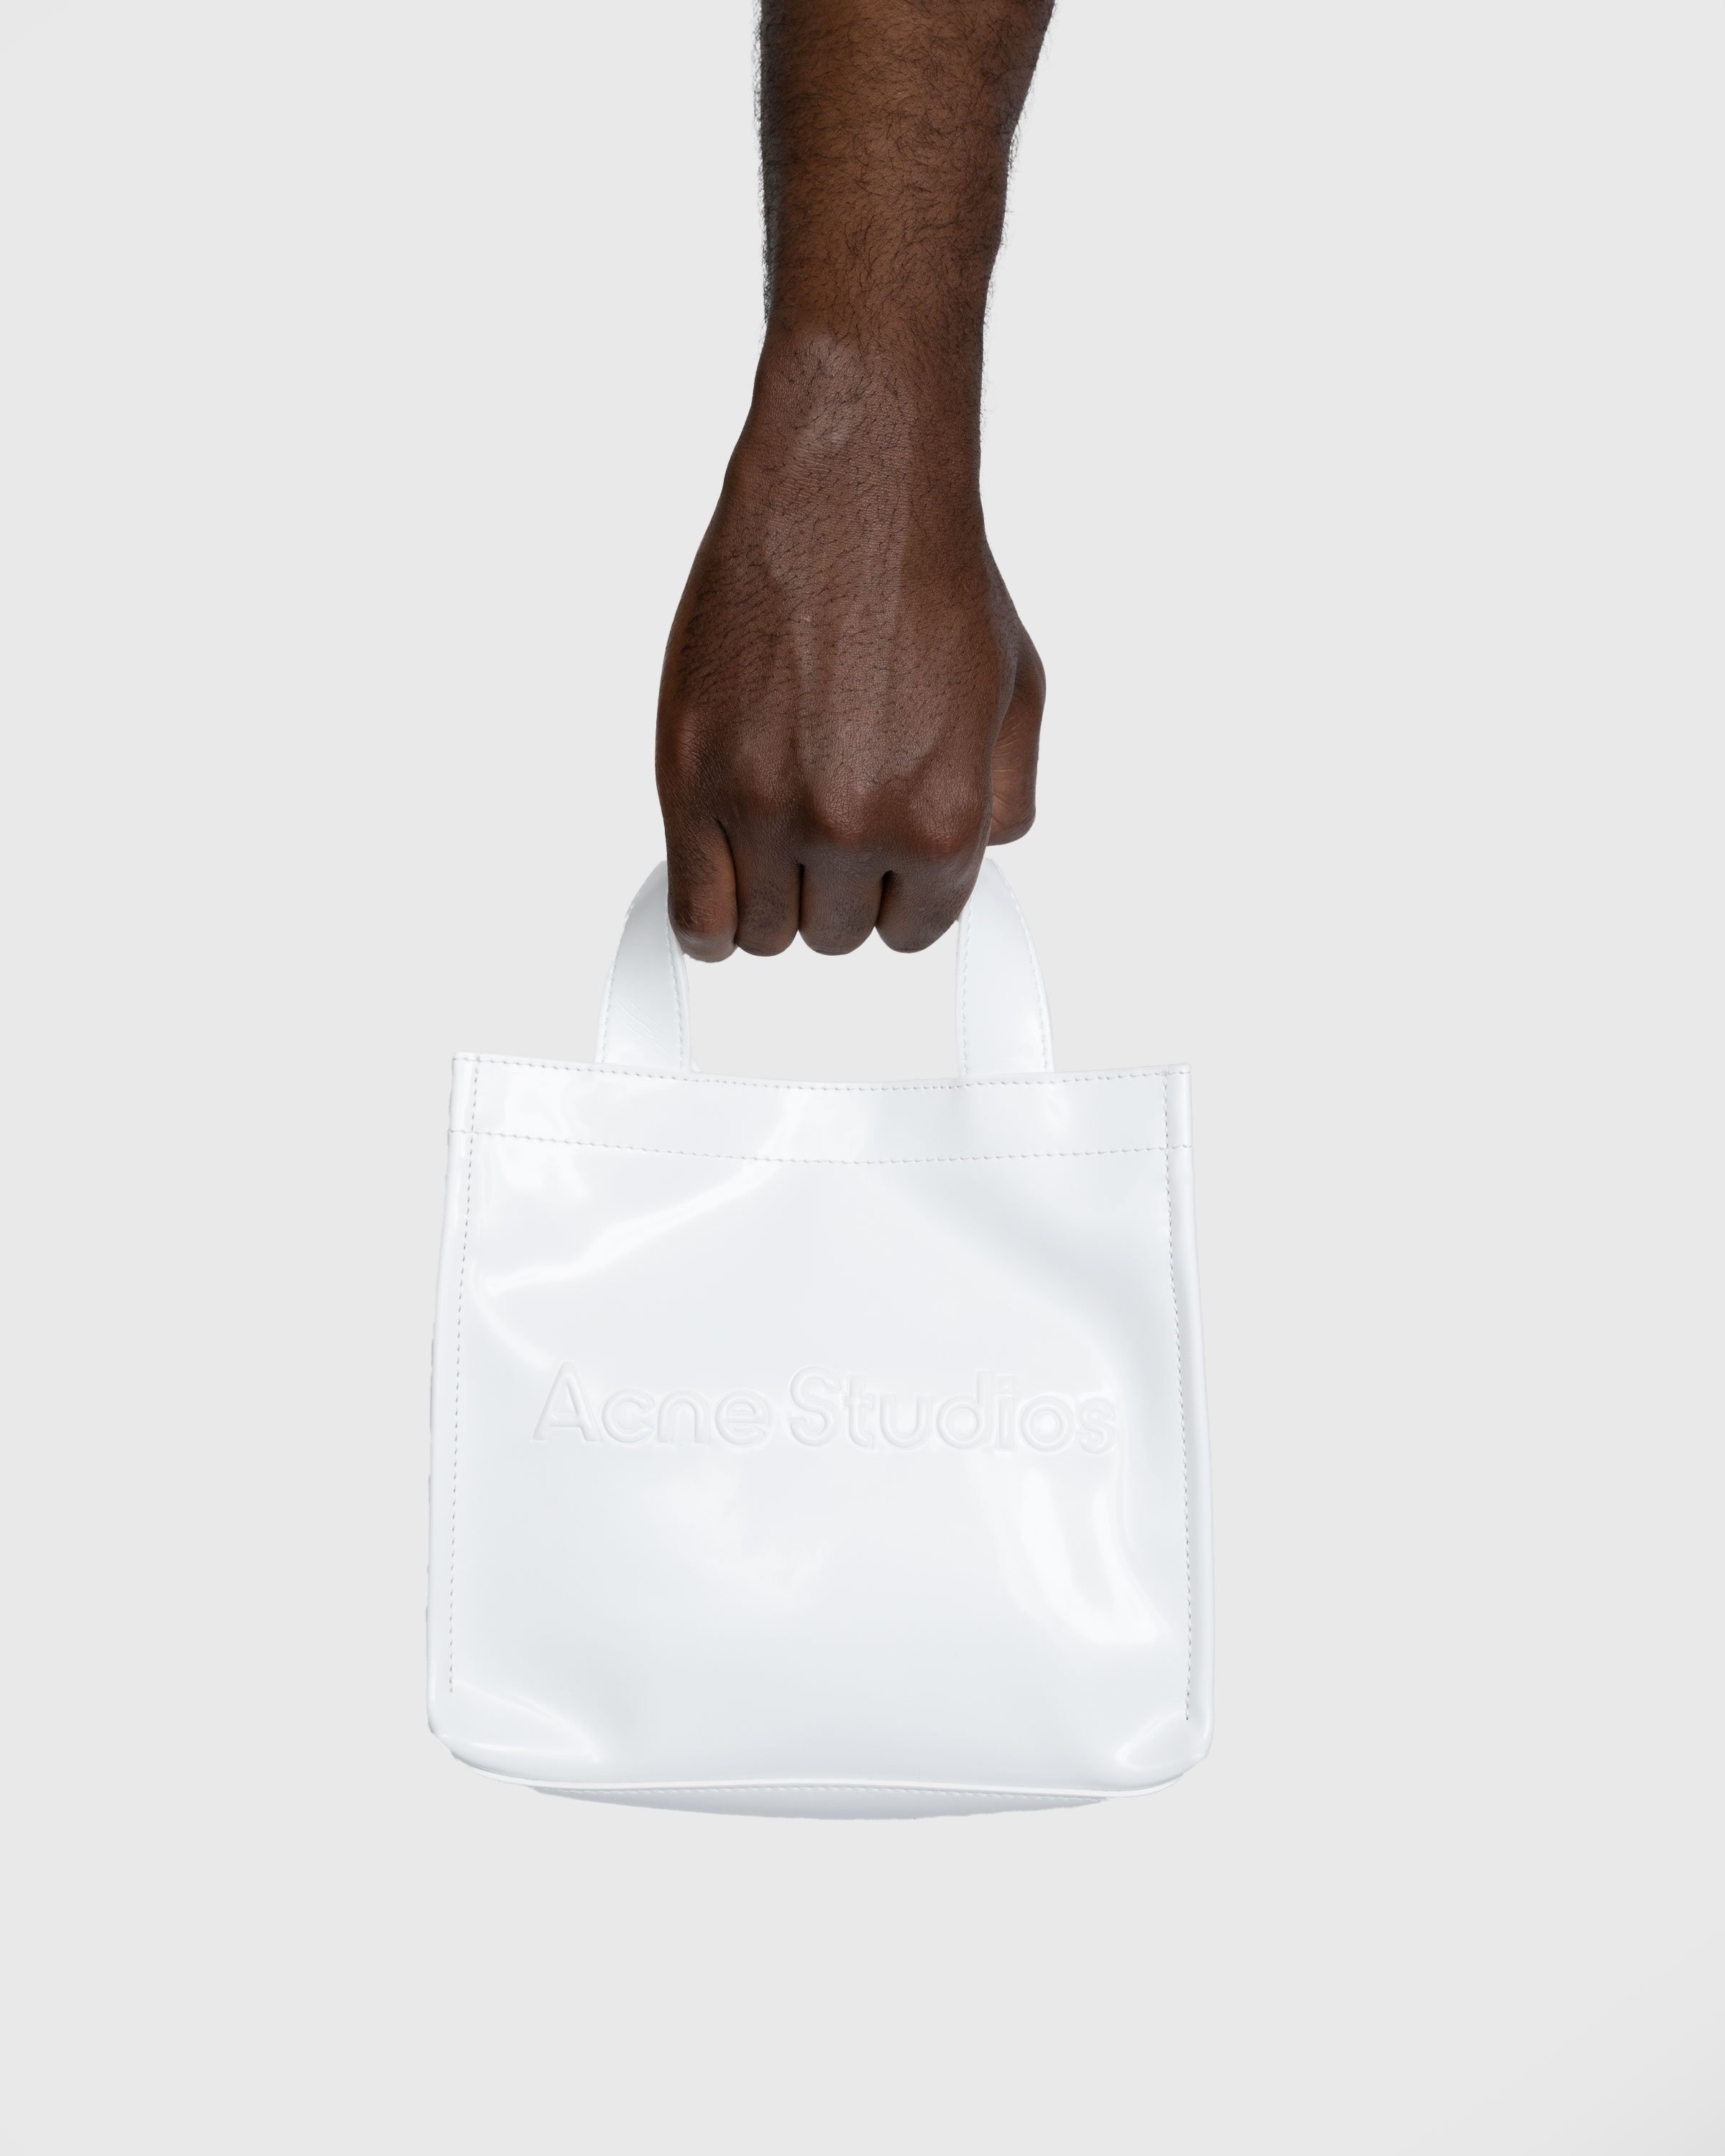 Acne Studios Mini Logo Tote Bag